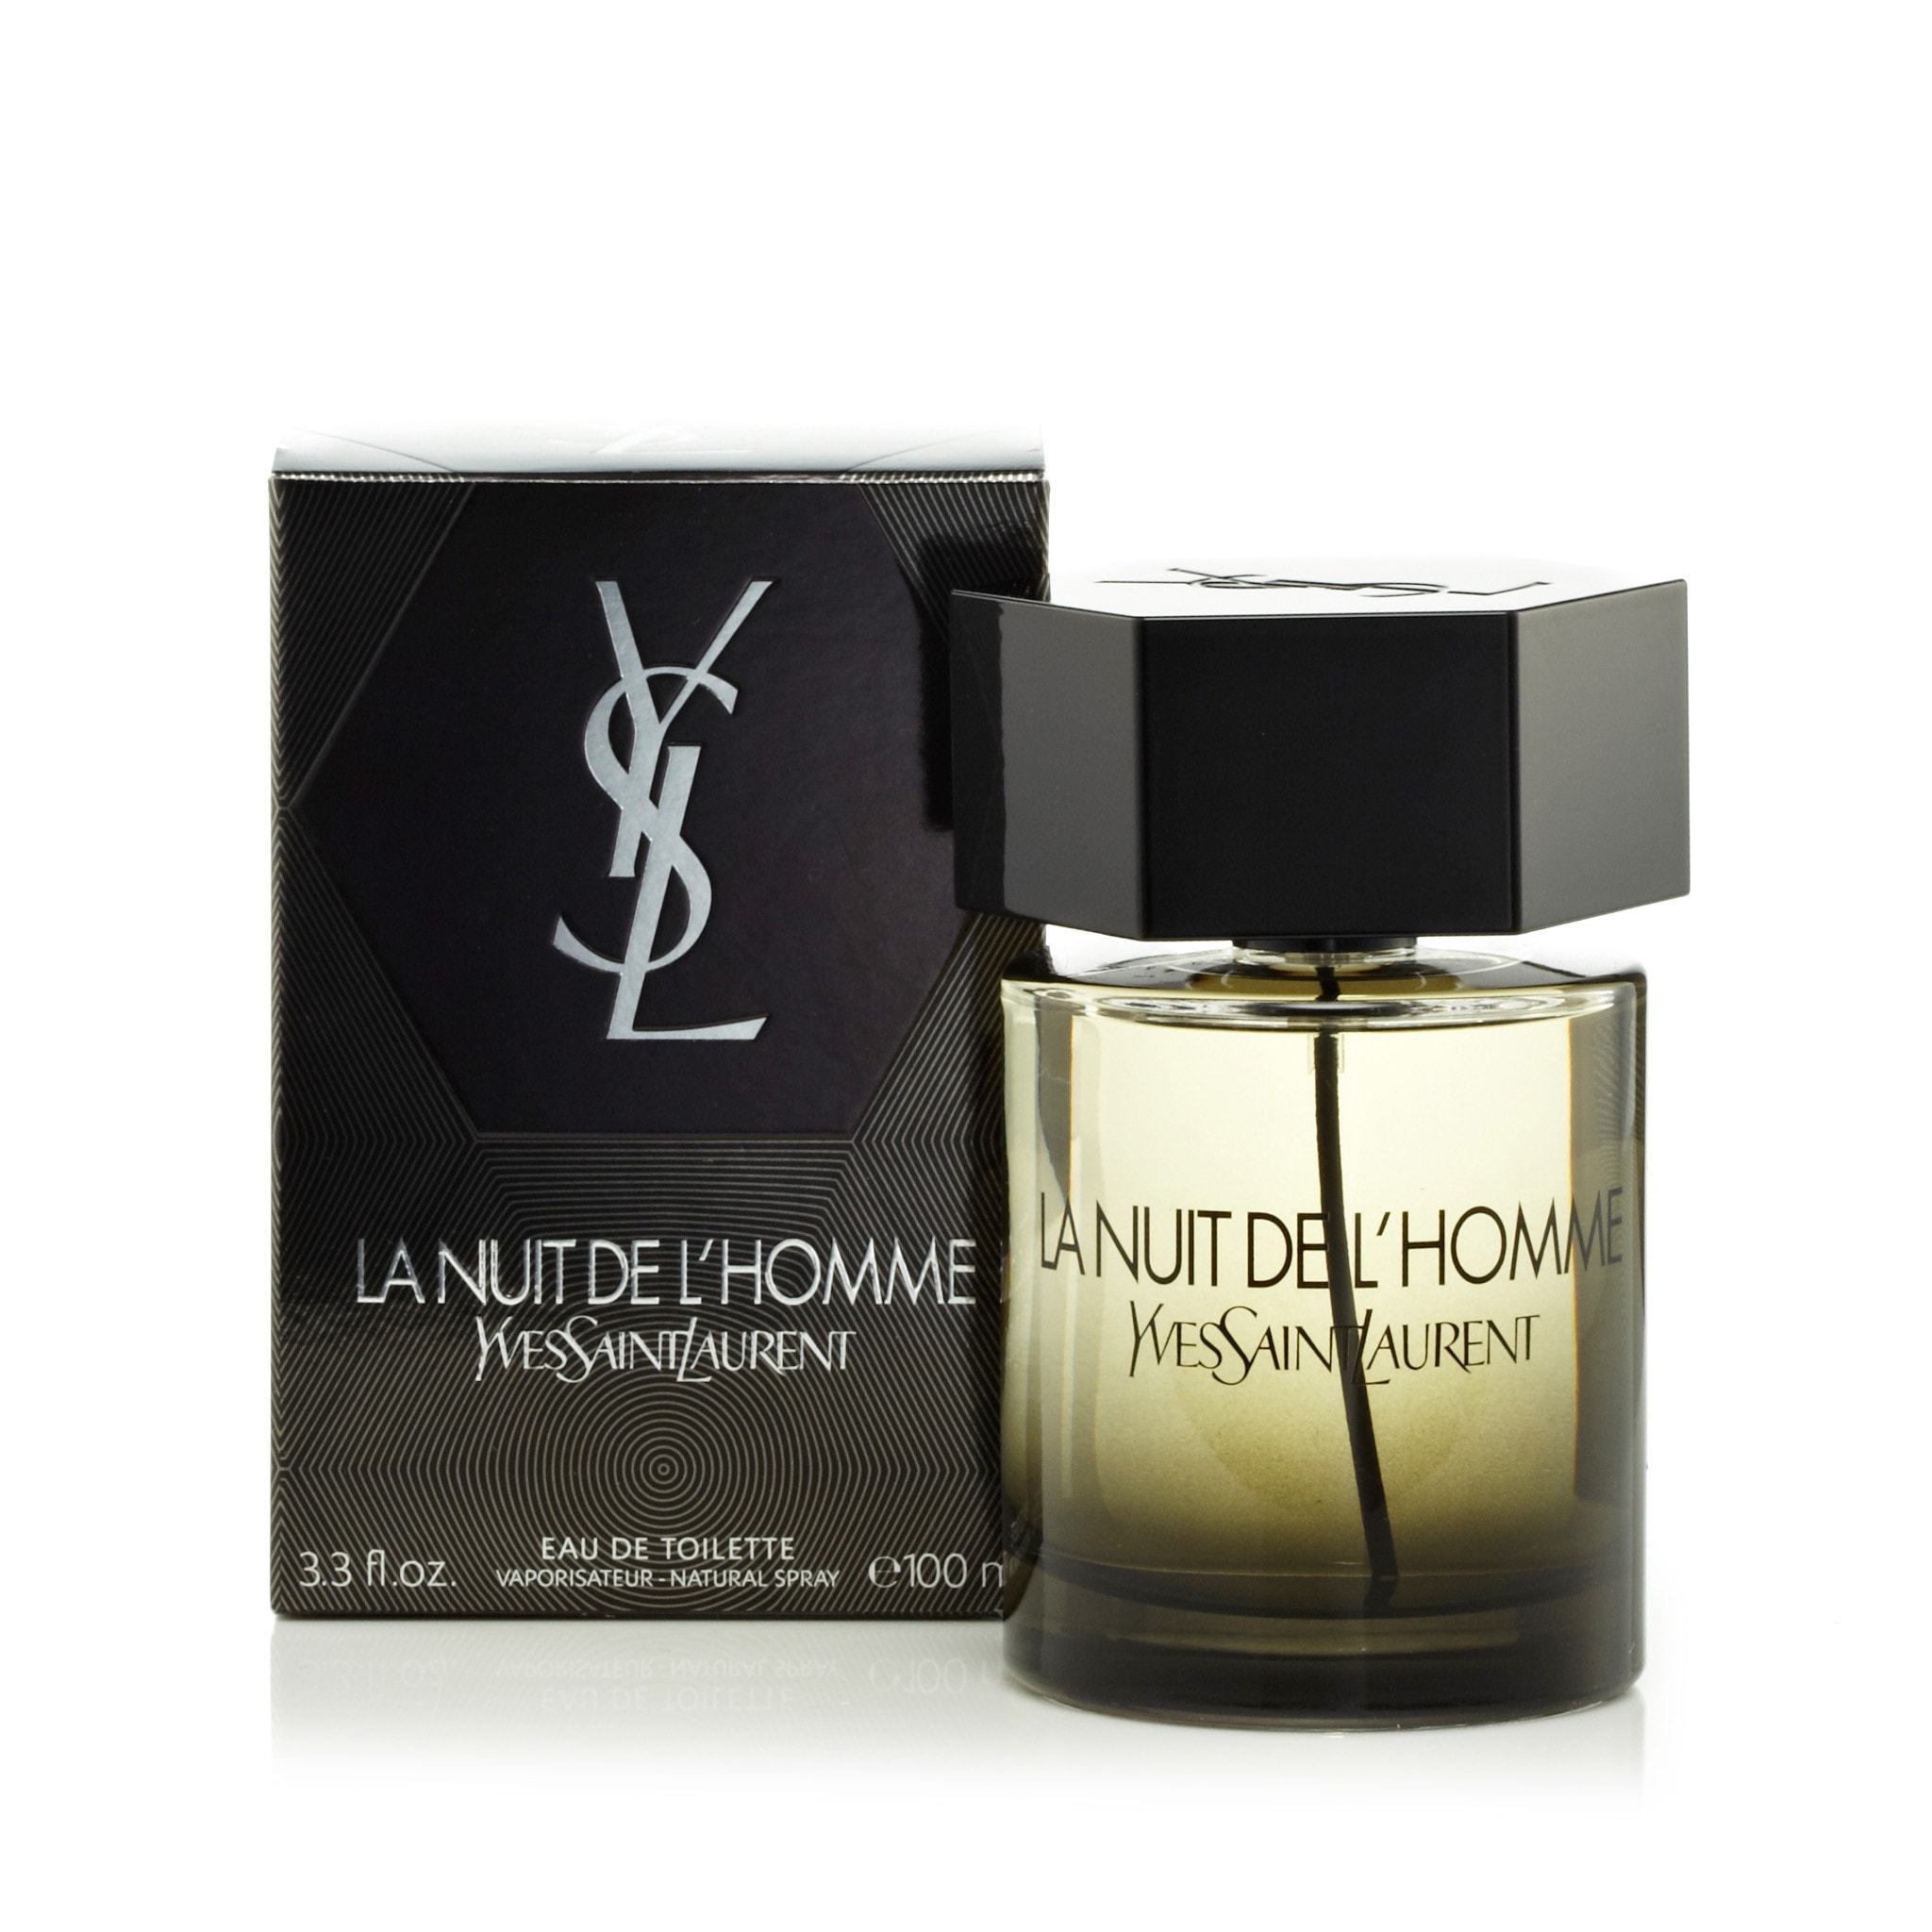 Libre Eau de Parfum Spray by Yves Saint Laurent 5 oz